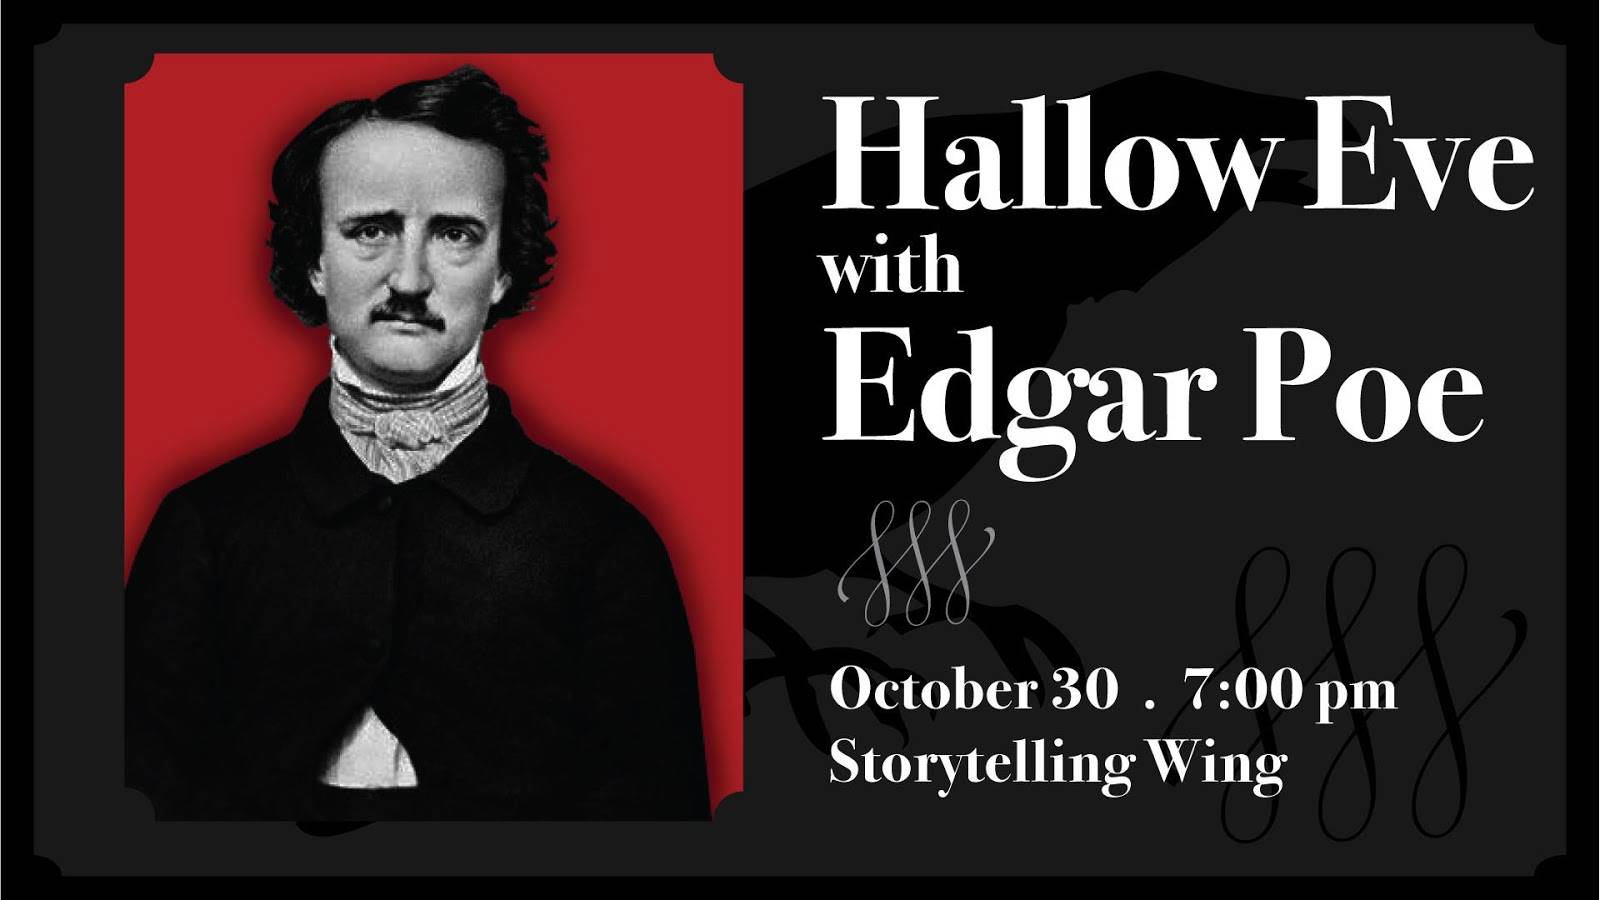 Edgar Allan Poe Wallpaper